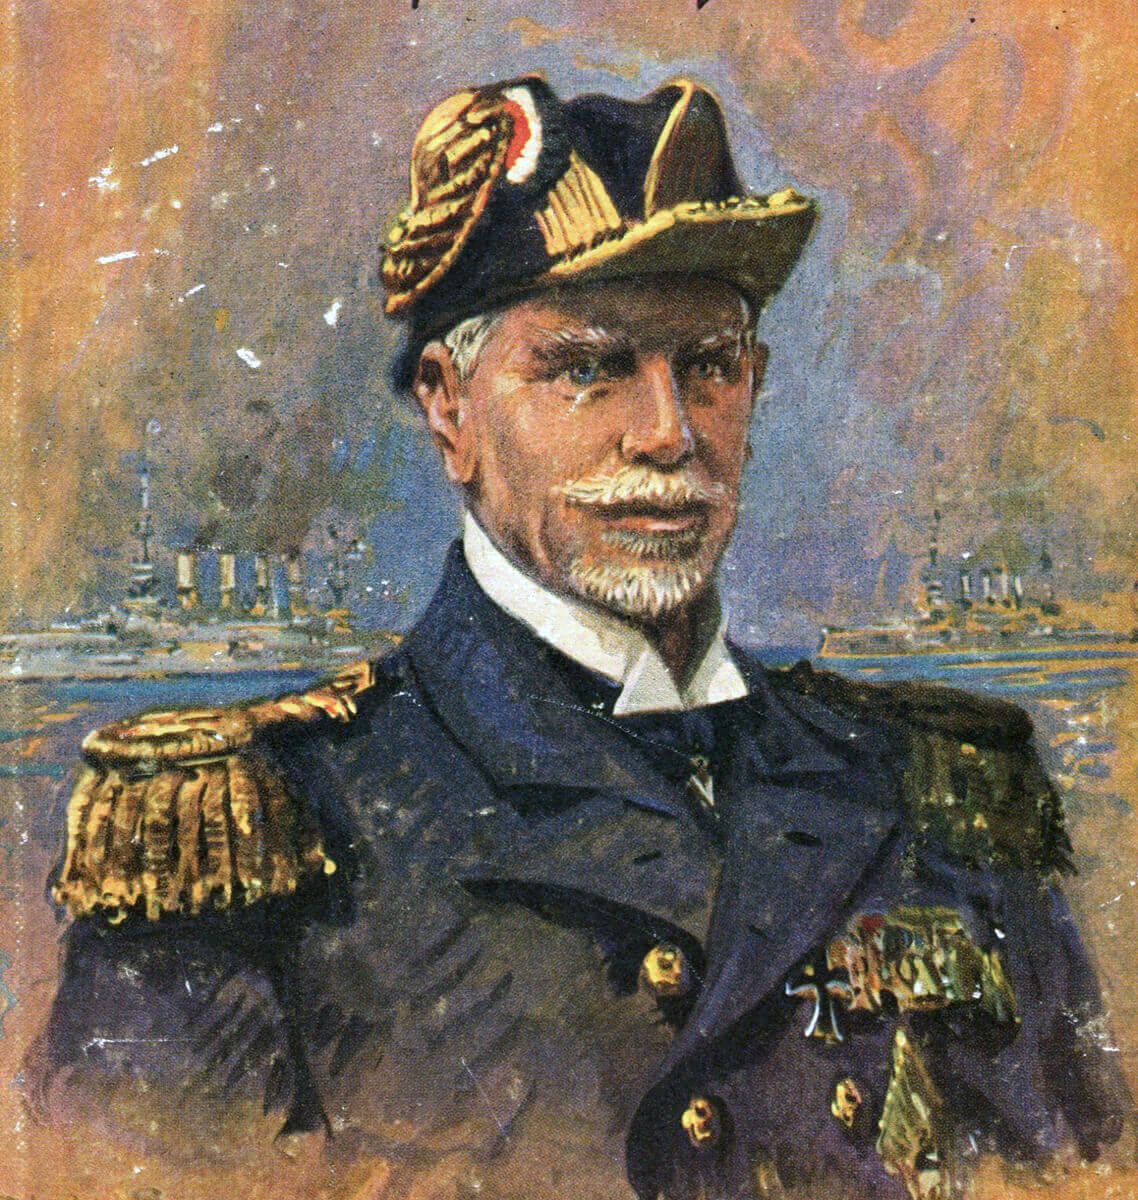 The Scharnhorst’s admiral’s standard slipped to half mast and Maerker on Gneisenau feared the worse & signaled Kpt Schultz on Scharnhorst believing von Spee was dead